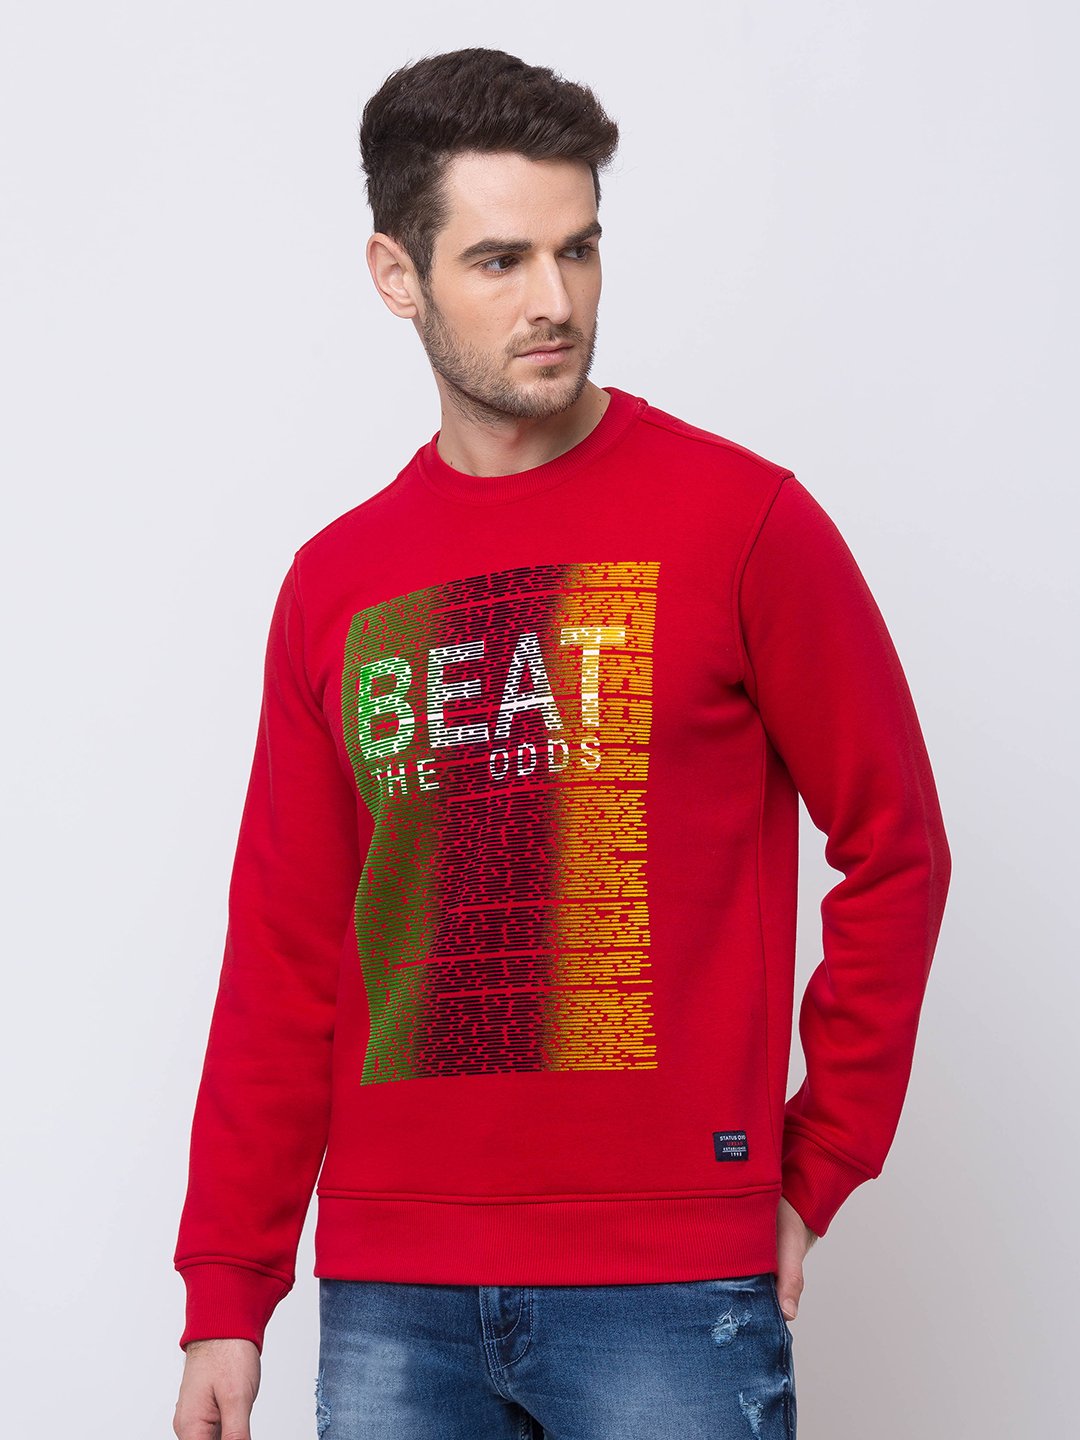 best sweatshirts for men